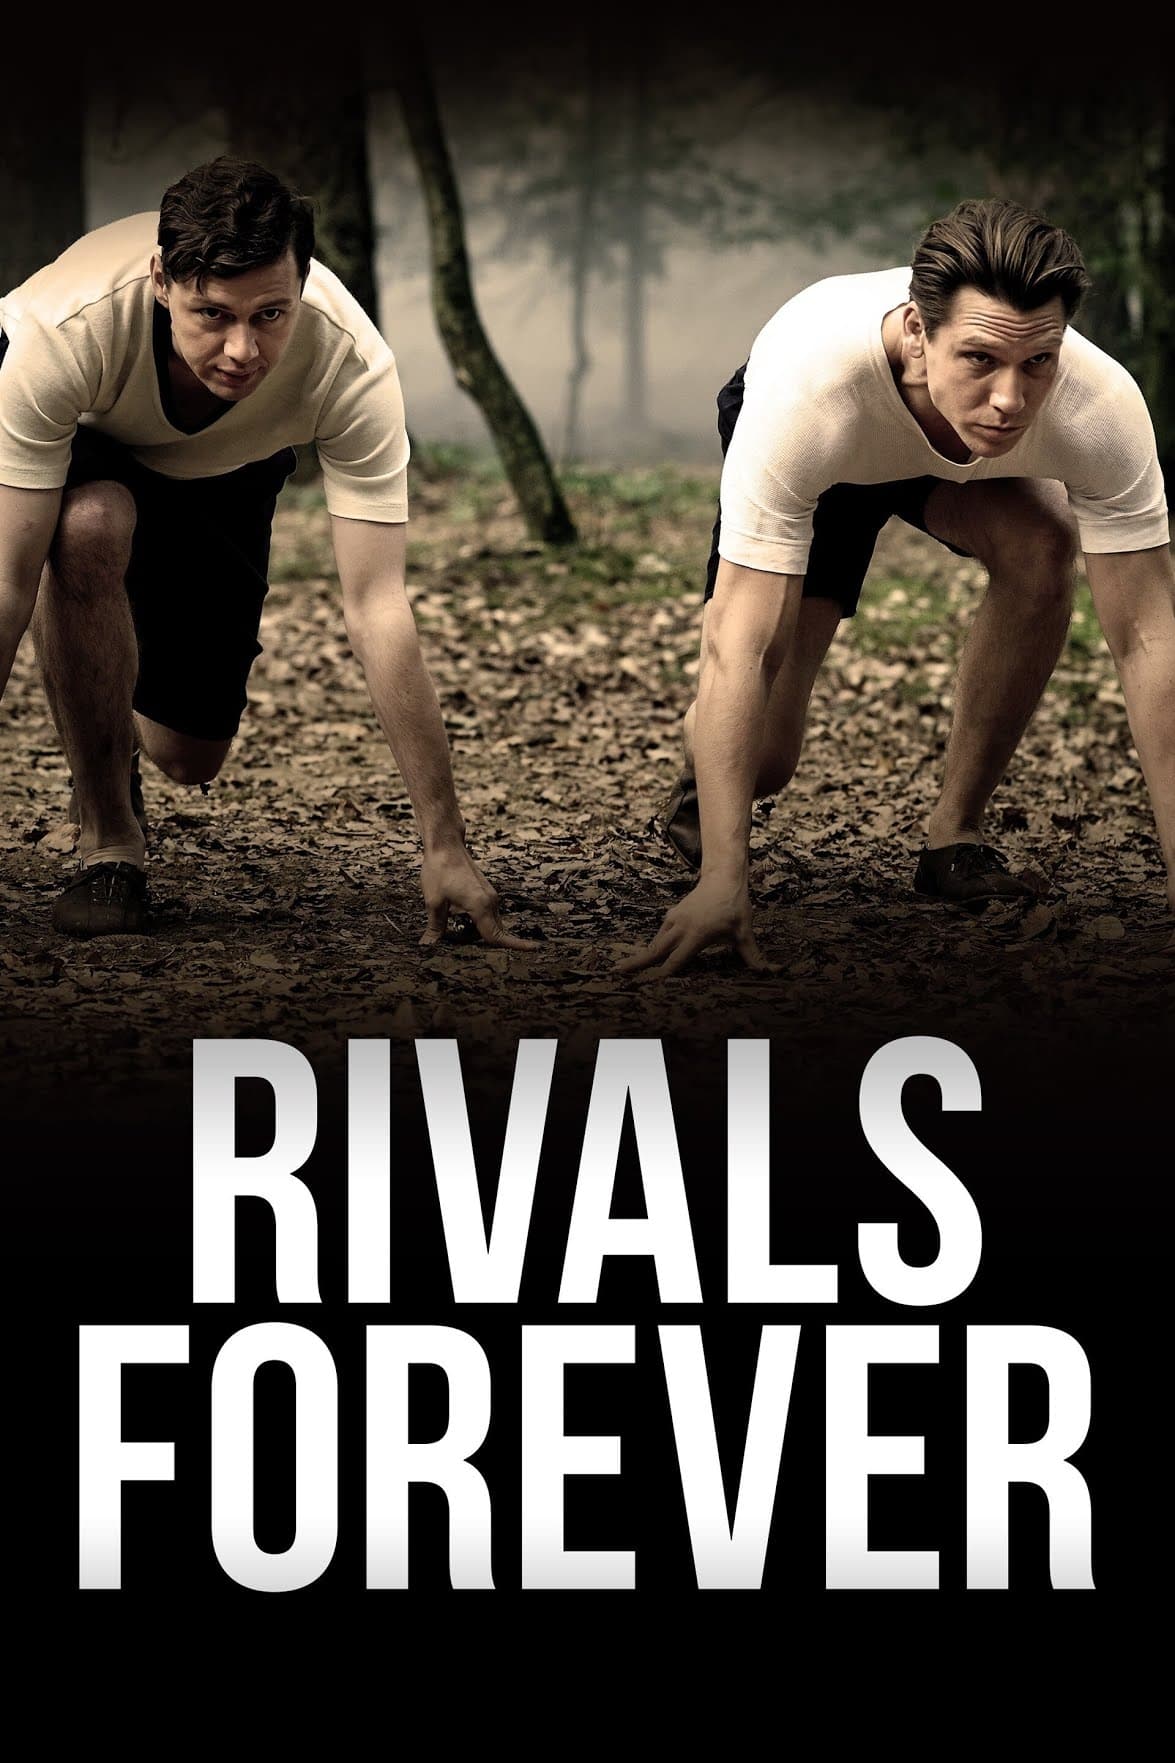 Rivals Forever - The Sneaker Battle